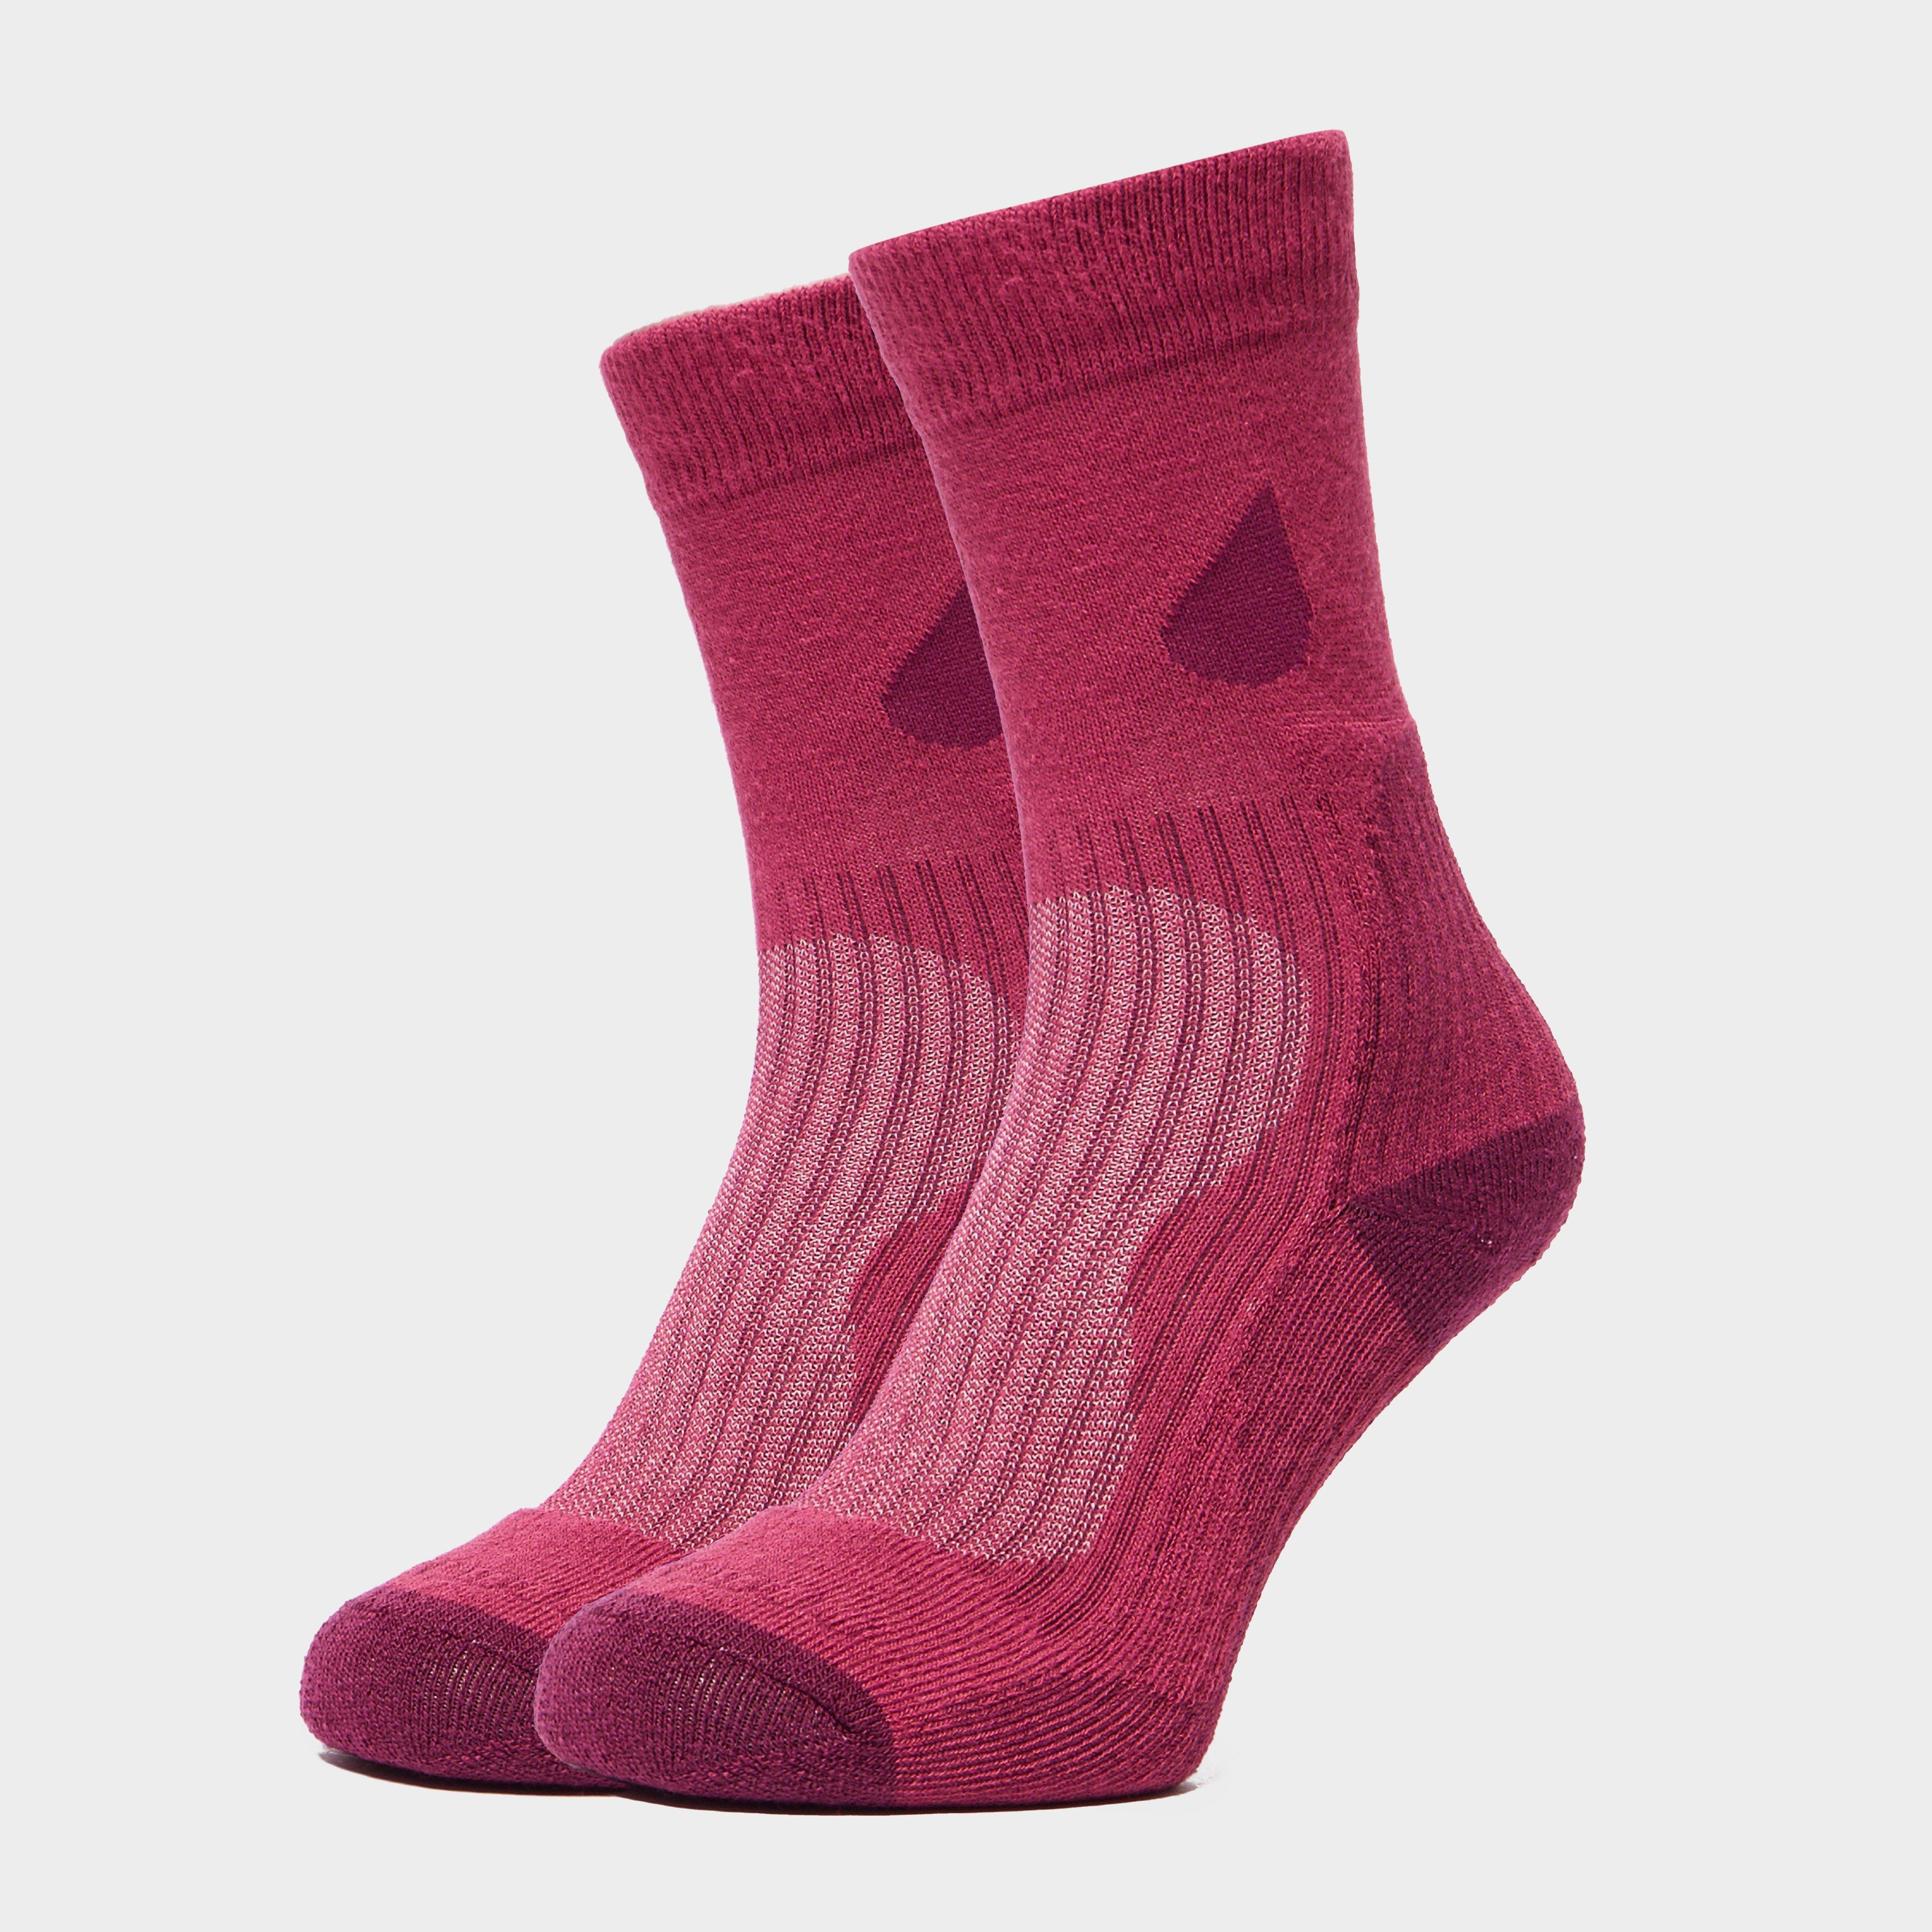 Peter Storm Womens Lightweight Outdoor Socks - 2 Pair Pack  Pink